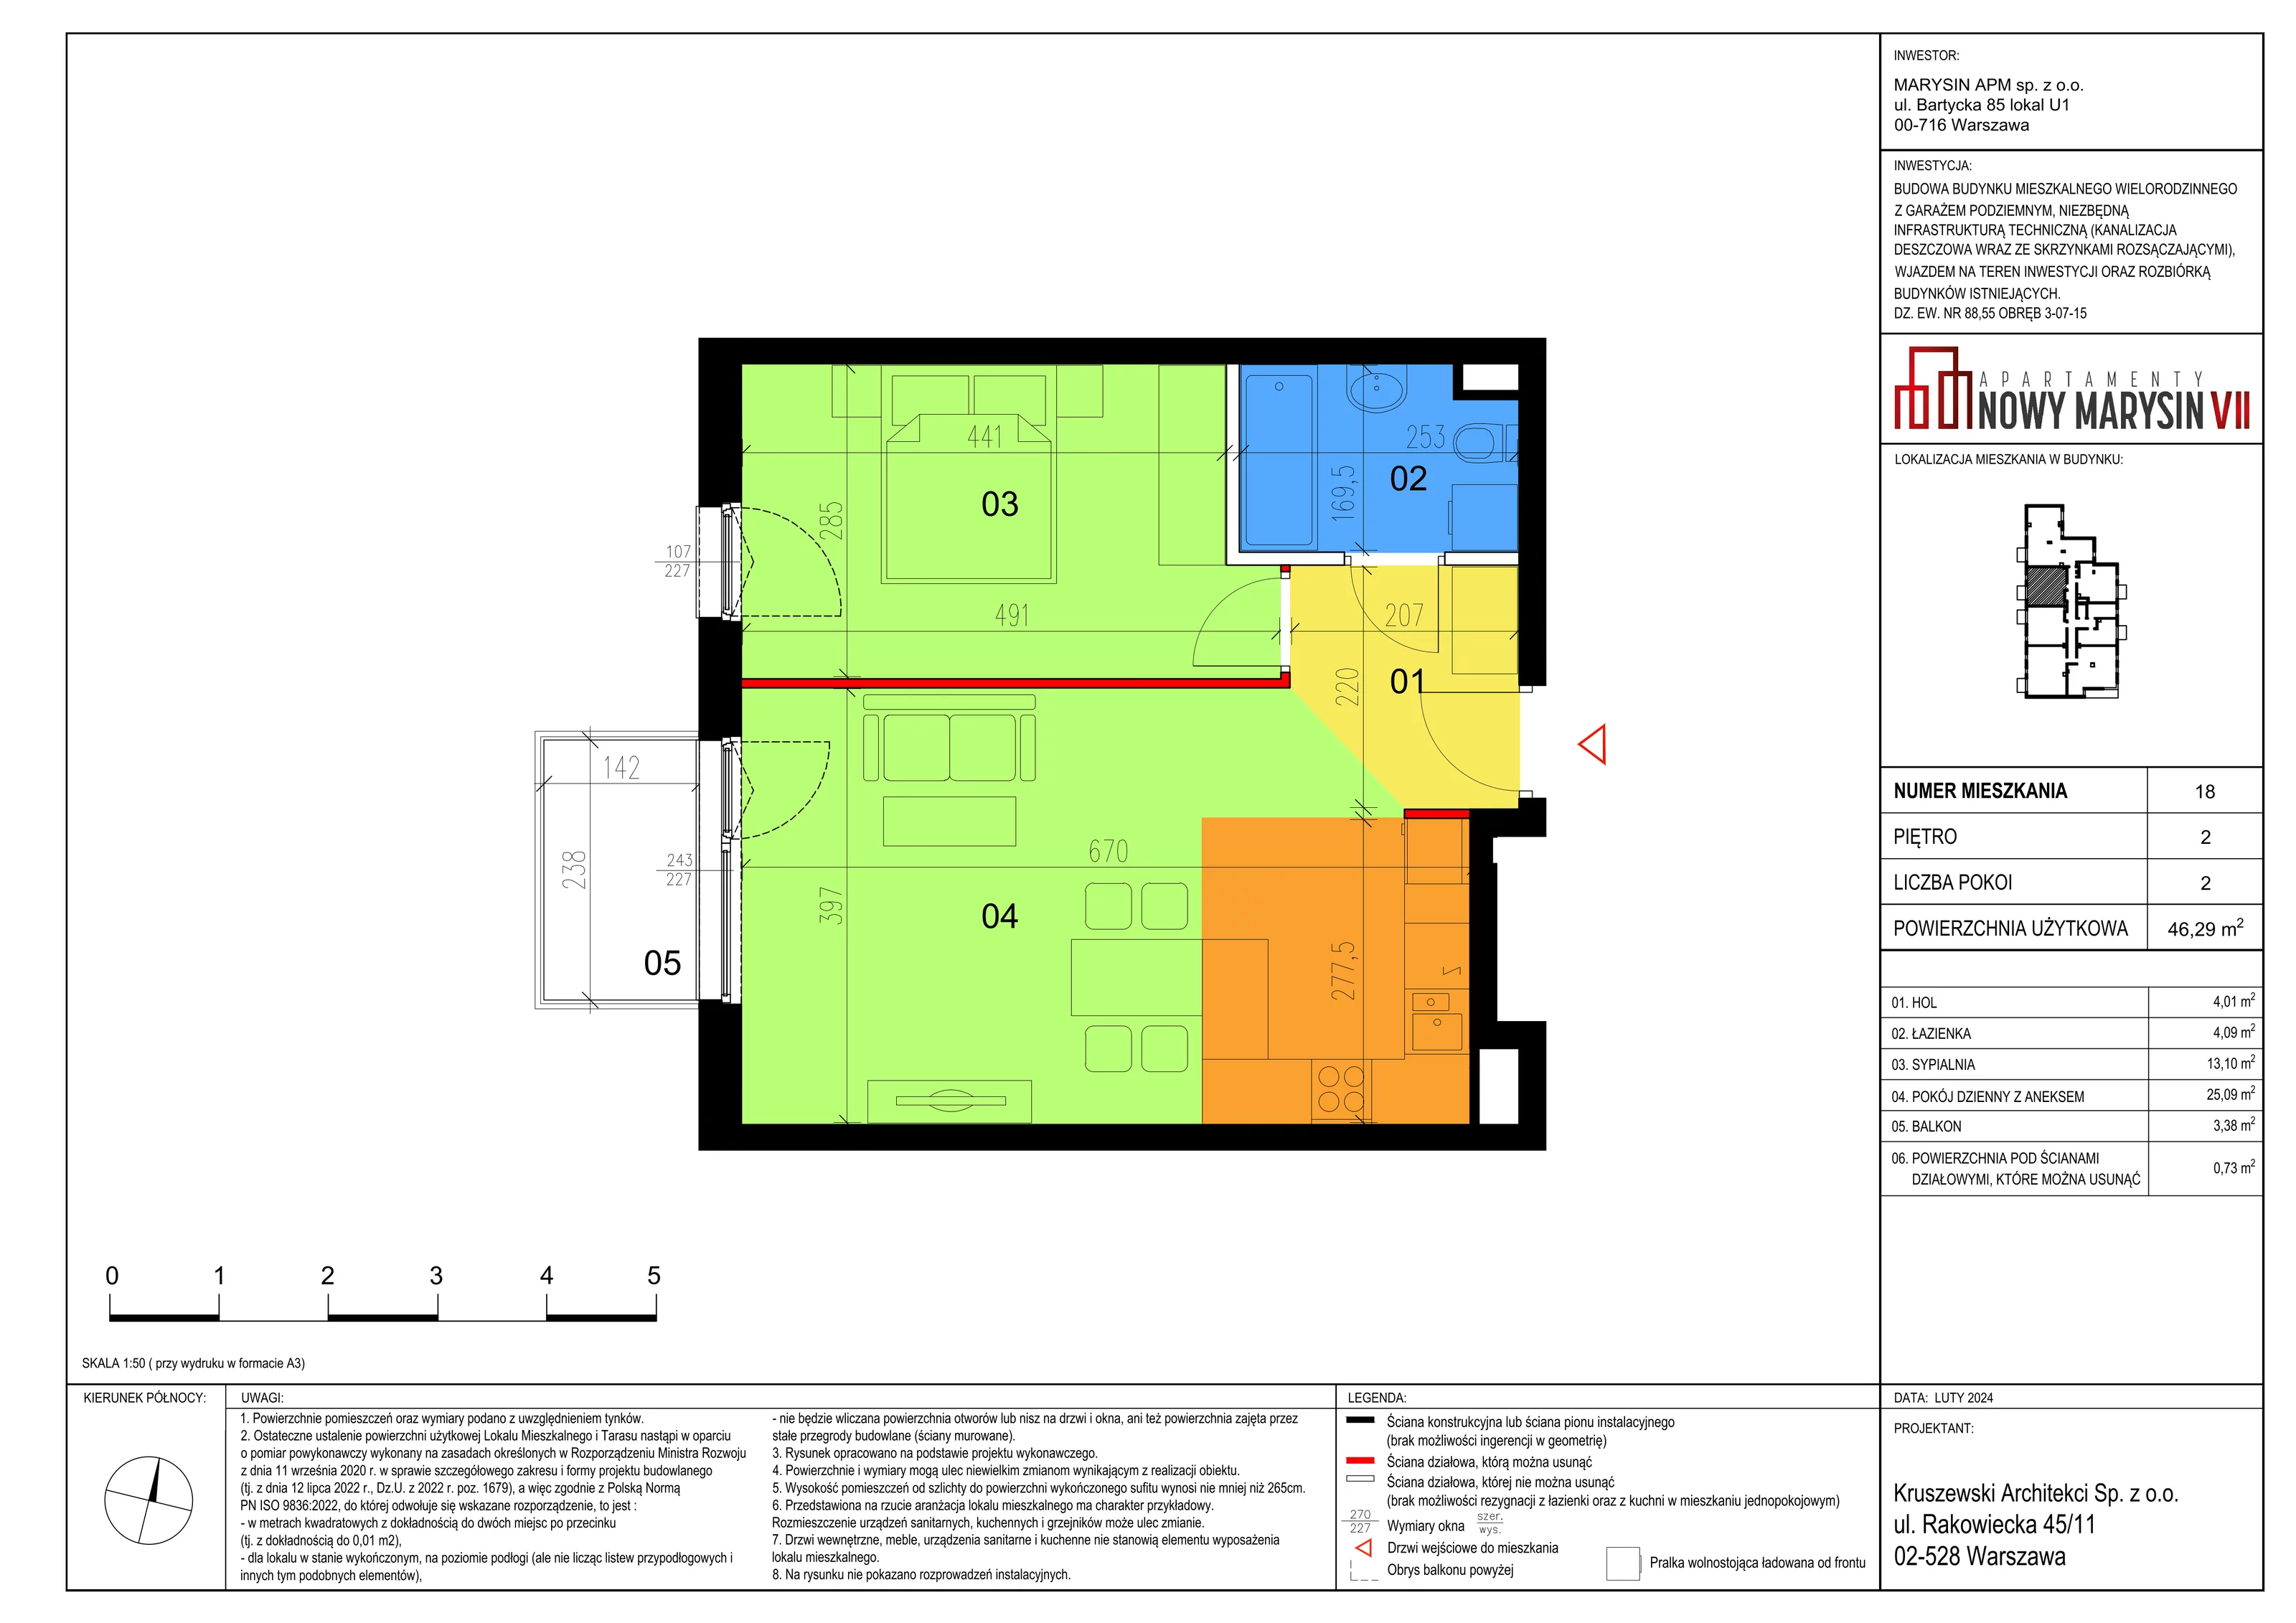 Mieszkanie 46,37 m², piętro 1, oferta nr VII_10, Apartamenty Marysin, Warszawa, Wawer, Marysin Wawerski, ul. Bluszczowa 14